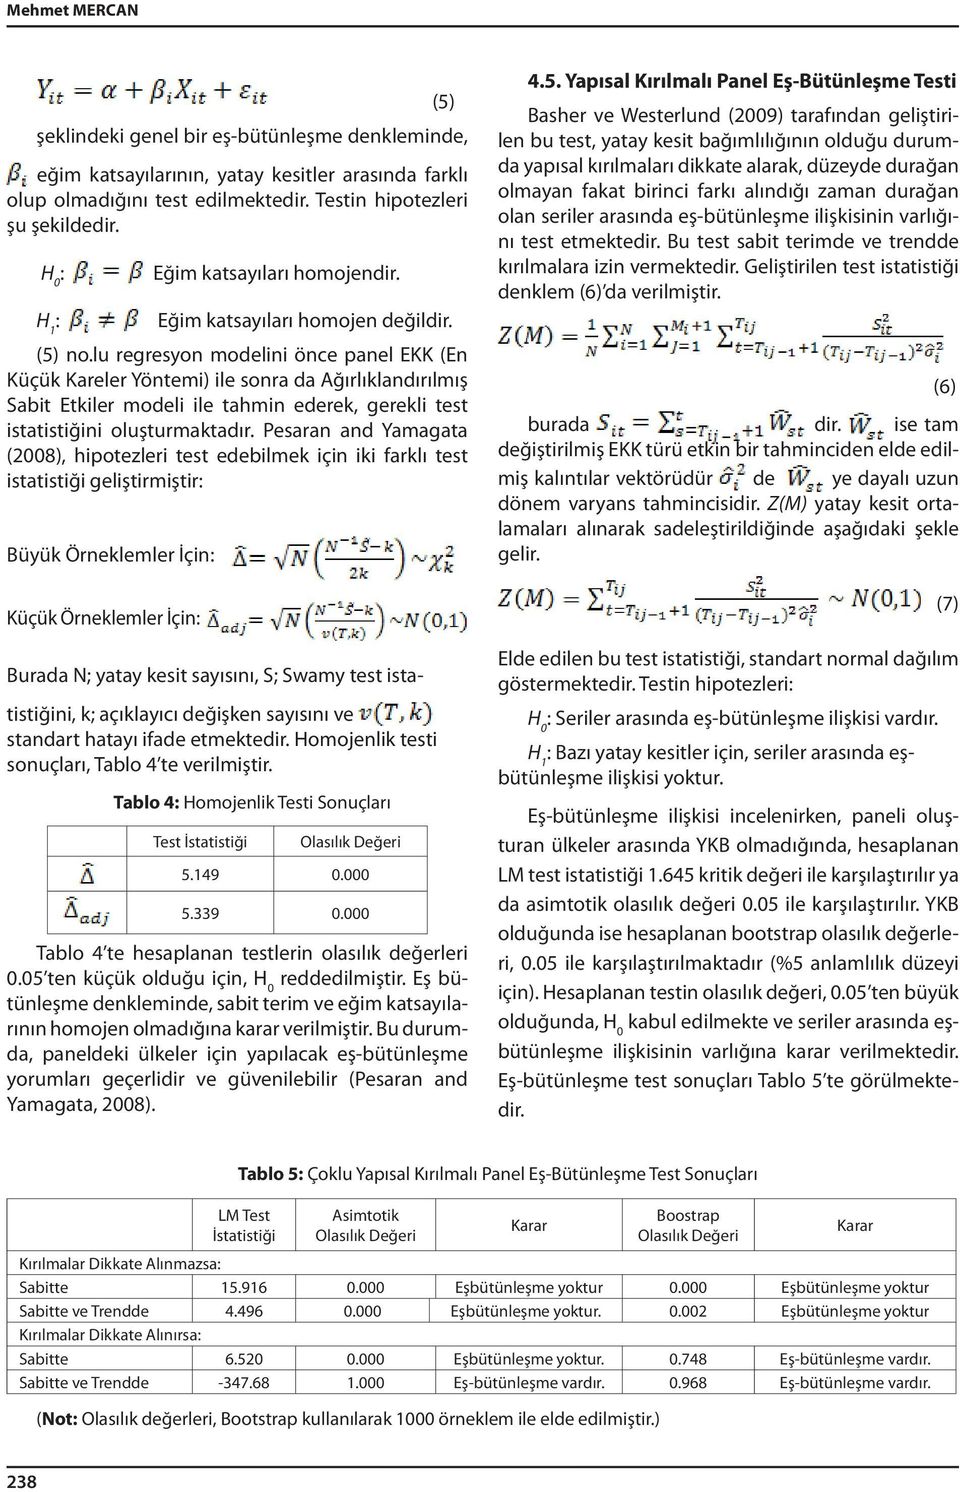 lu regresyon modelini önce panel EKK (En Küçük Kareler Yöntemi) ile sonra da Ağırlıklandırılmış Sabit Etkiler modeli ile tahmin ederek, gerekli test istatistiğini oluşturmaktadır.